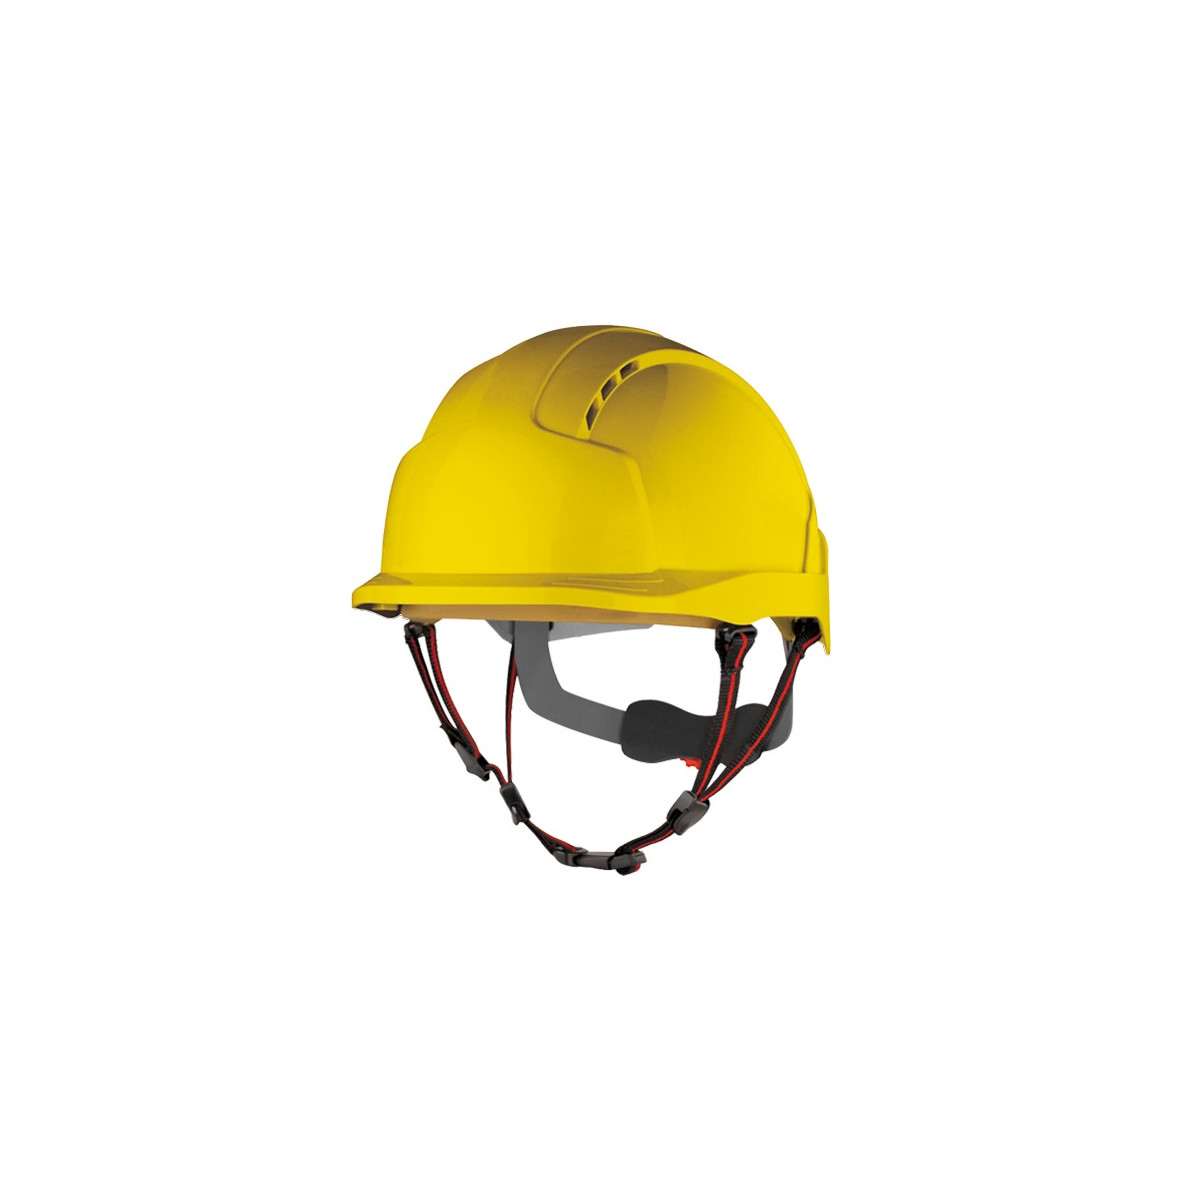 ochrona-glowy-czaszki - Przemysłowy zawodowy hełm kask yellow evolite JSP